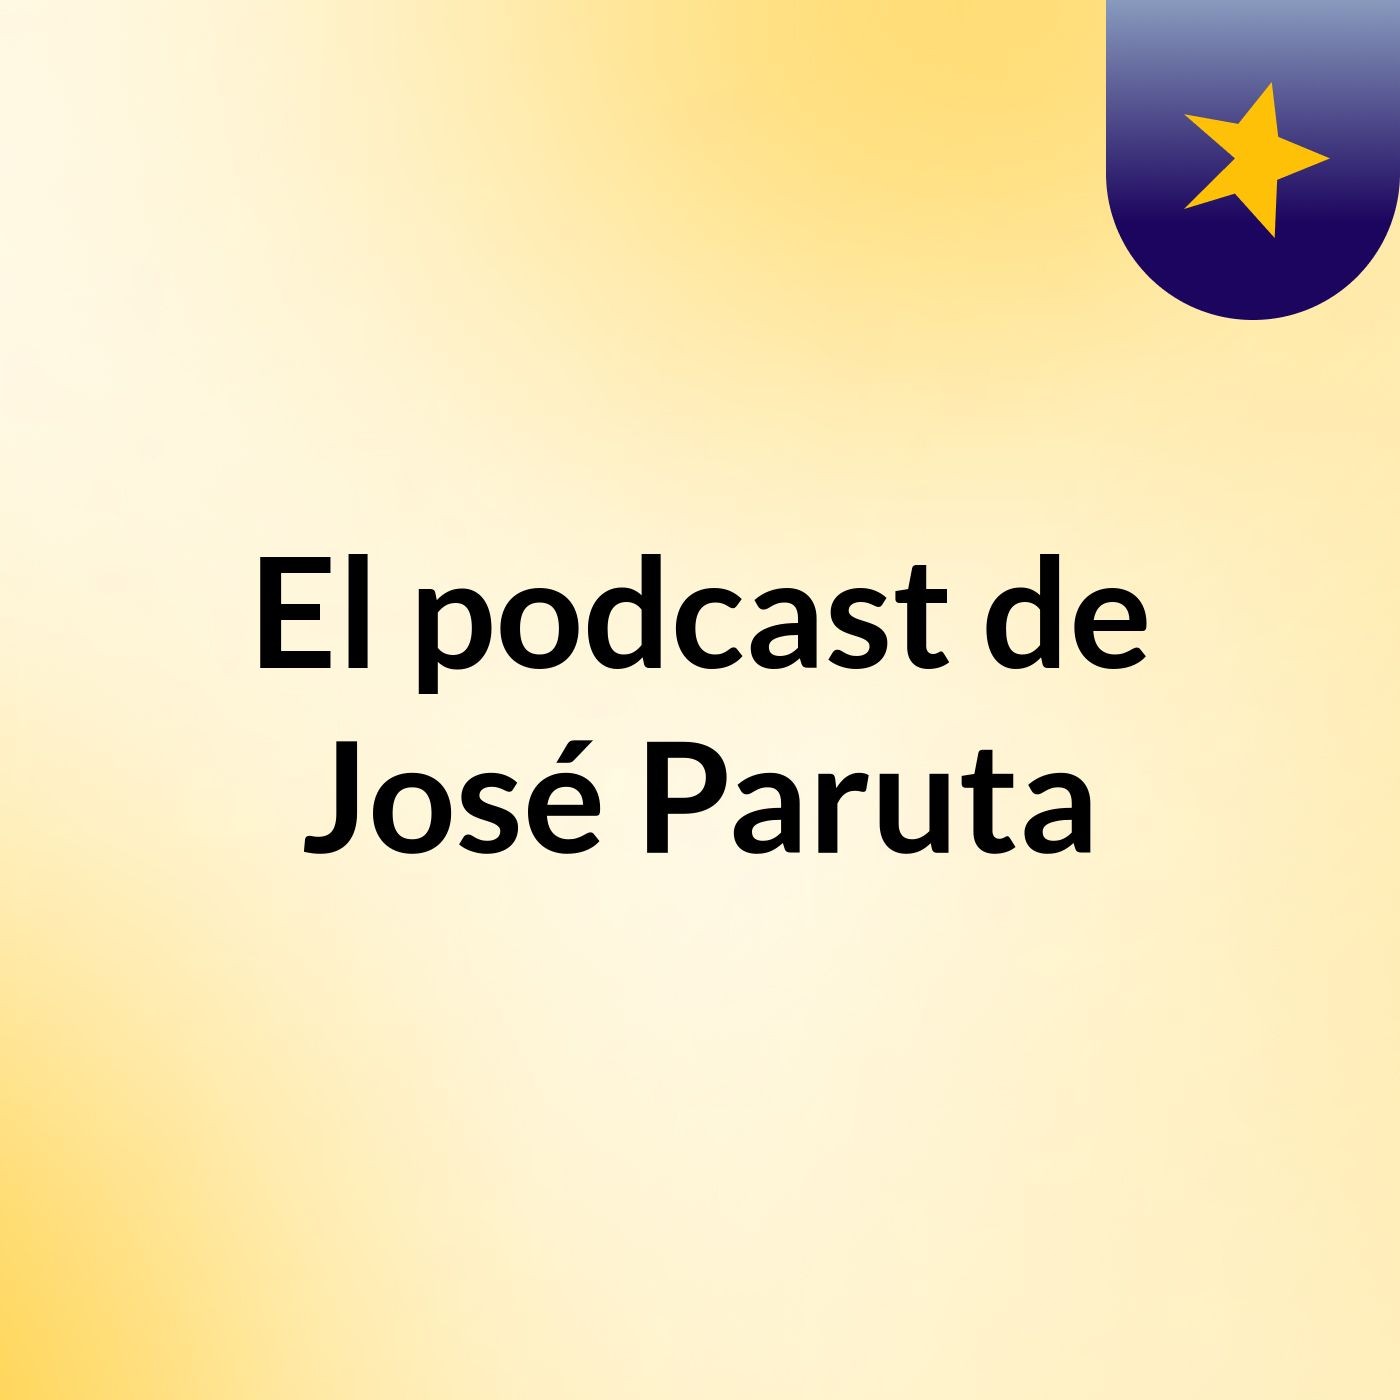 El podcast de José Paruta